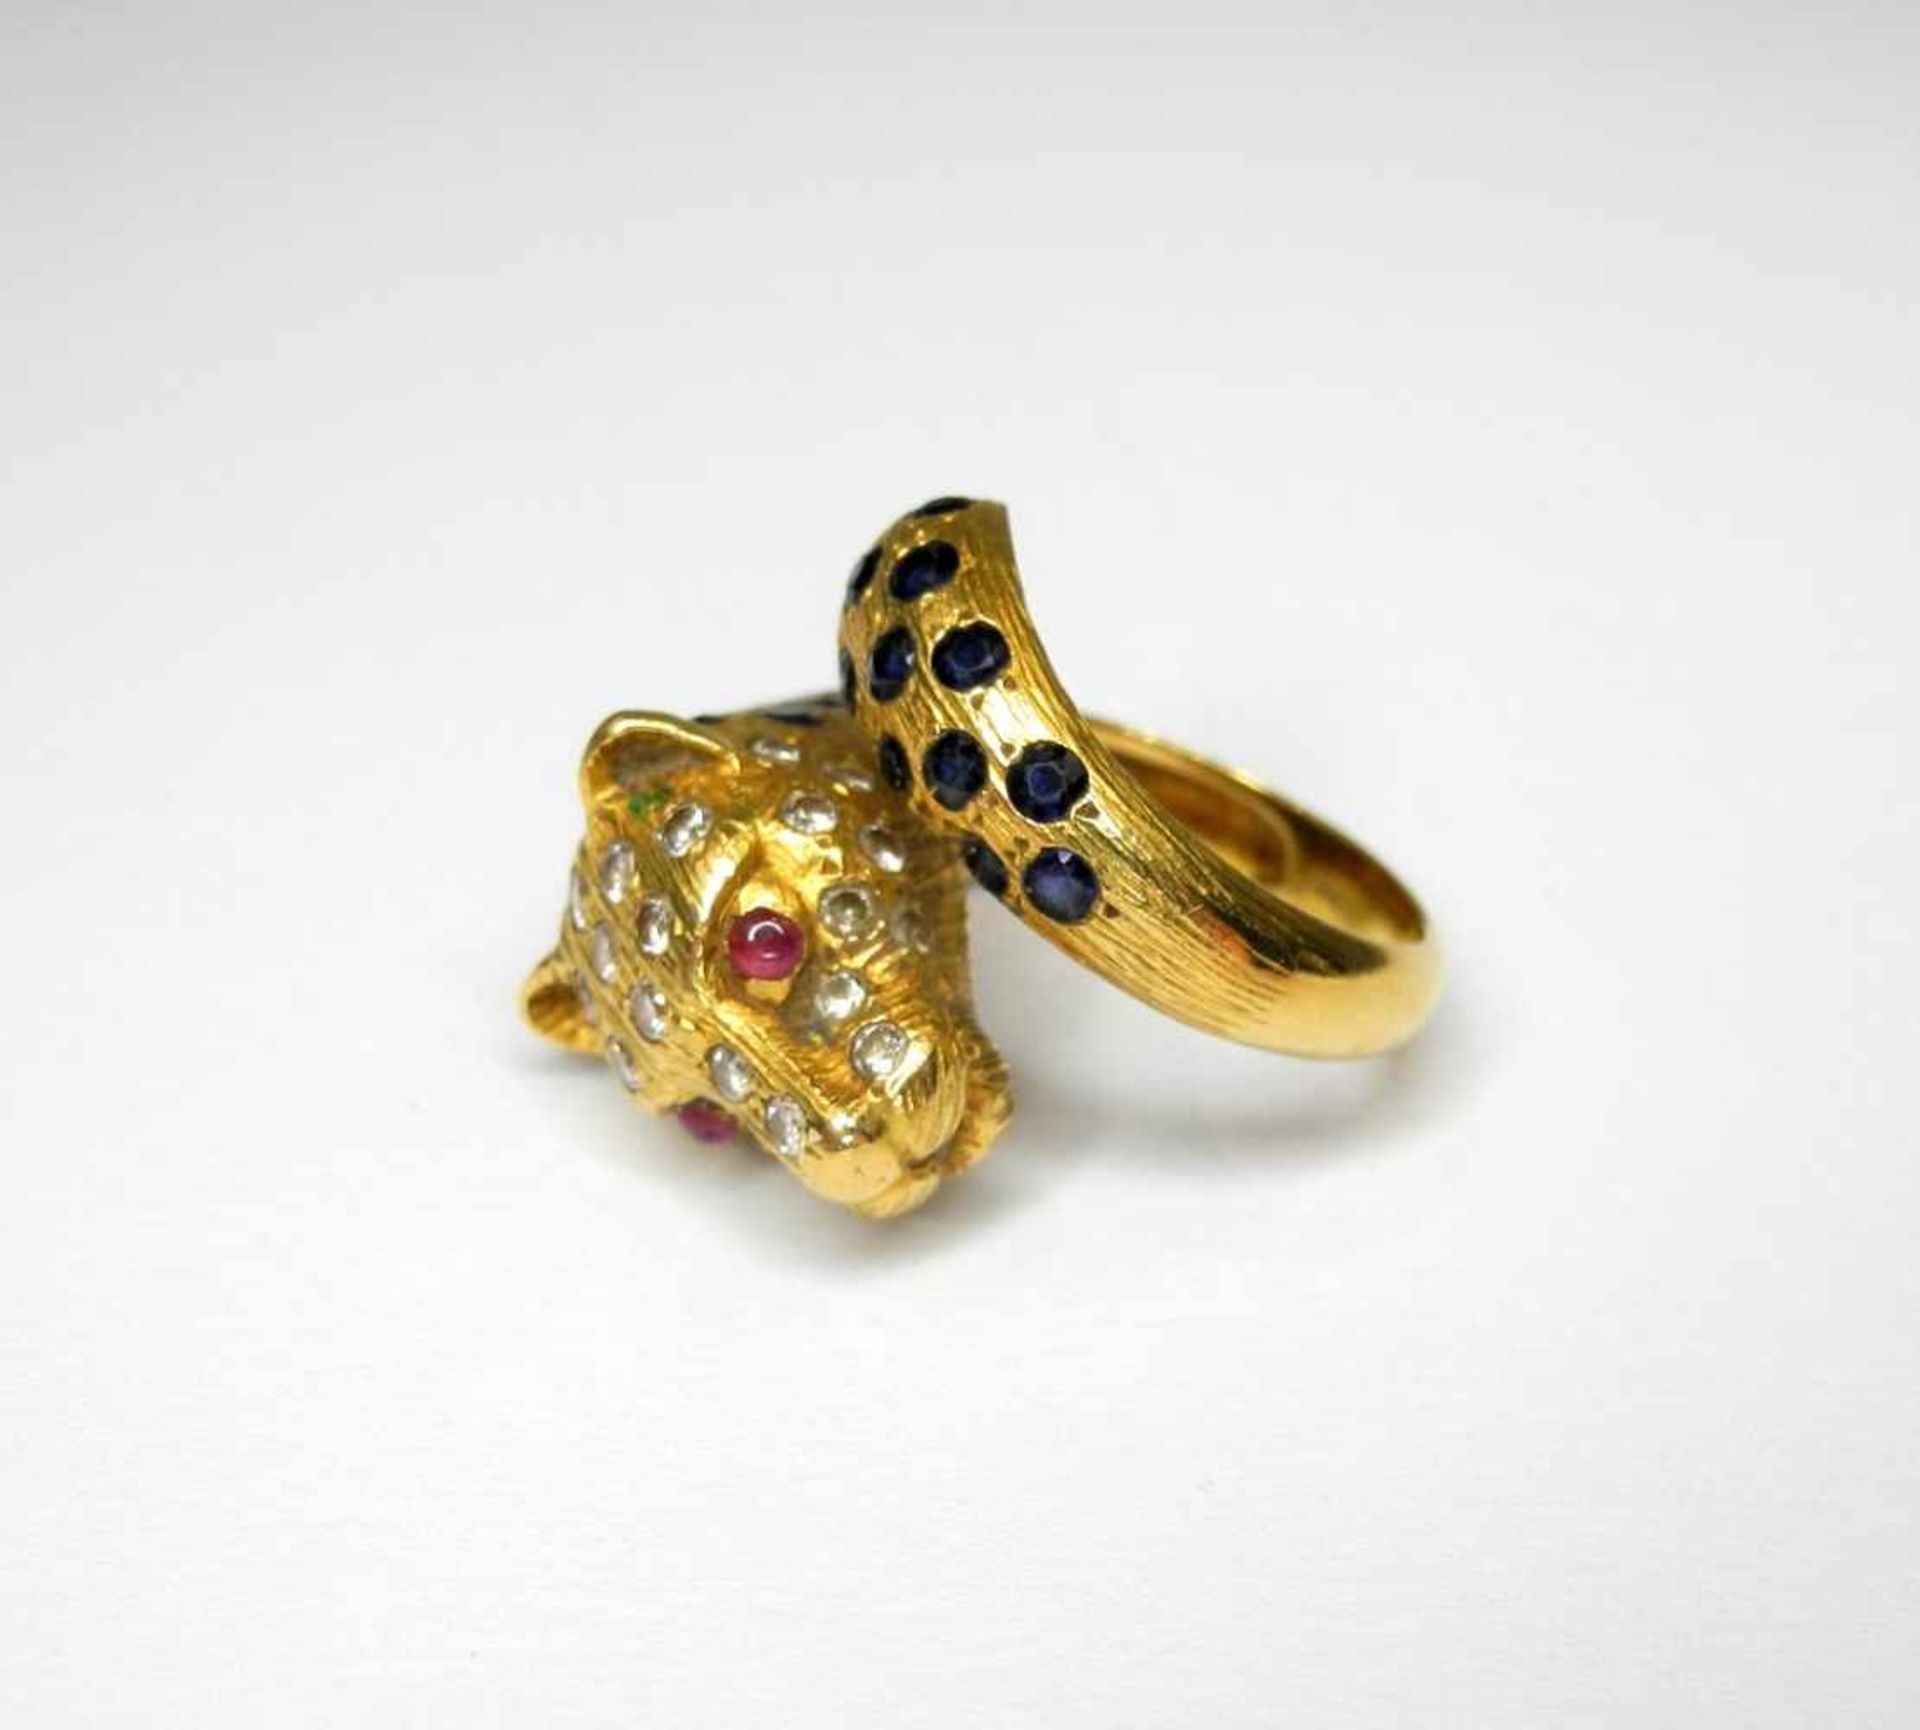 Massiver Leoparden-Ring mit Rubinaugen18 K. Gelbgold. Mit Saphir-, Rubin- und Diamantbesatz.